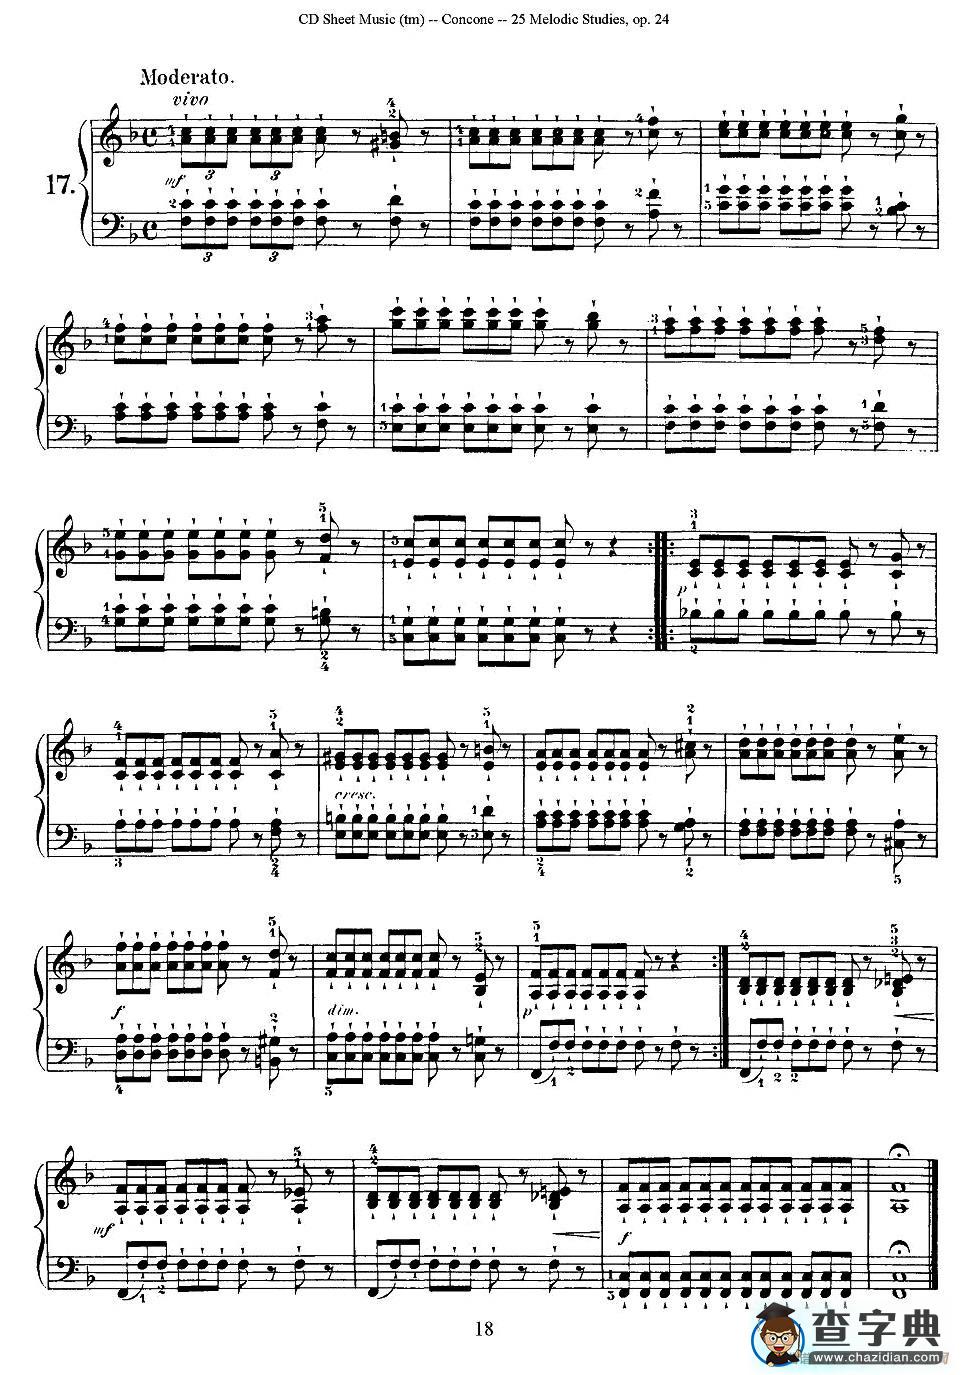 Concone - 25 Melodic Studies easy and progressive（16—20）钢琴谱